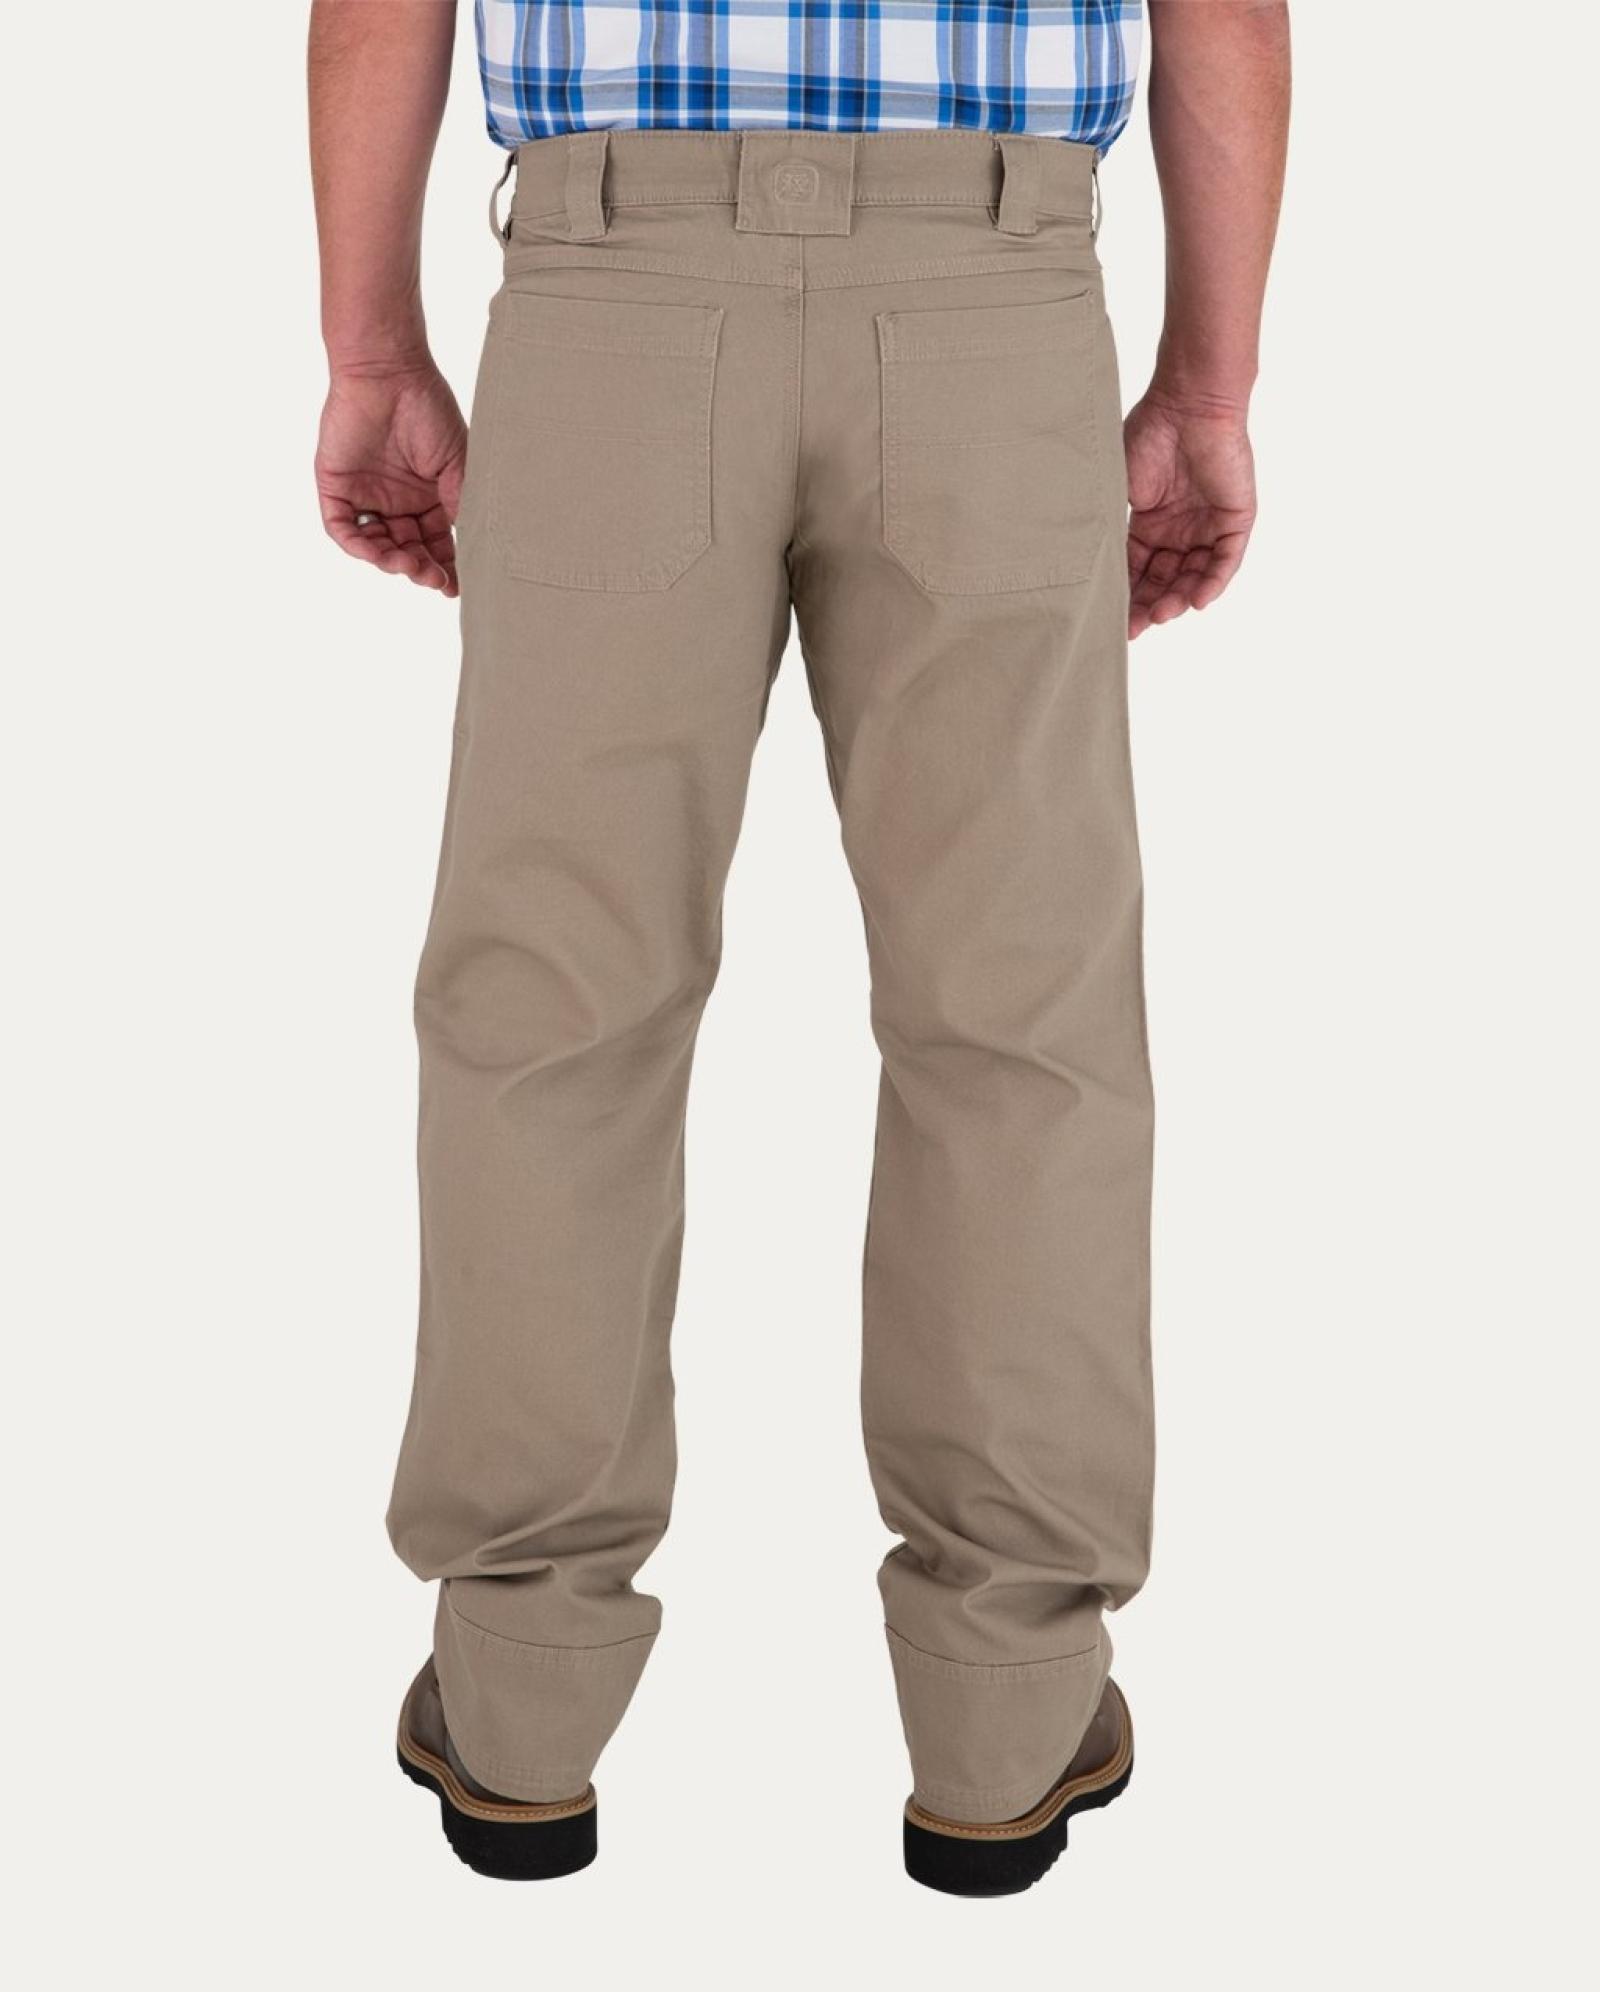 Noble Outfitters Men's Flex Canvas Work Pants